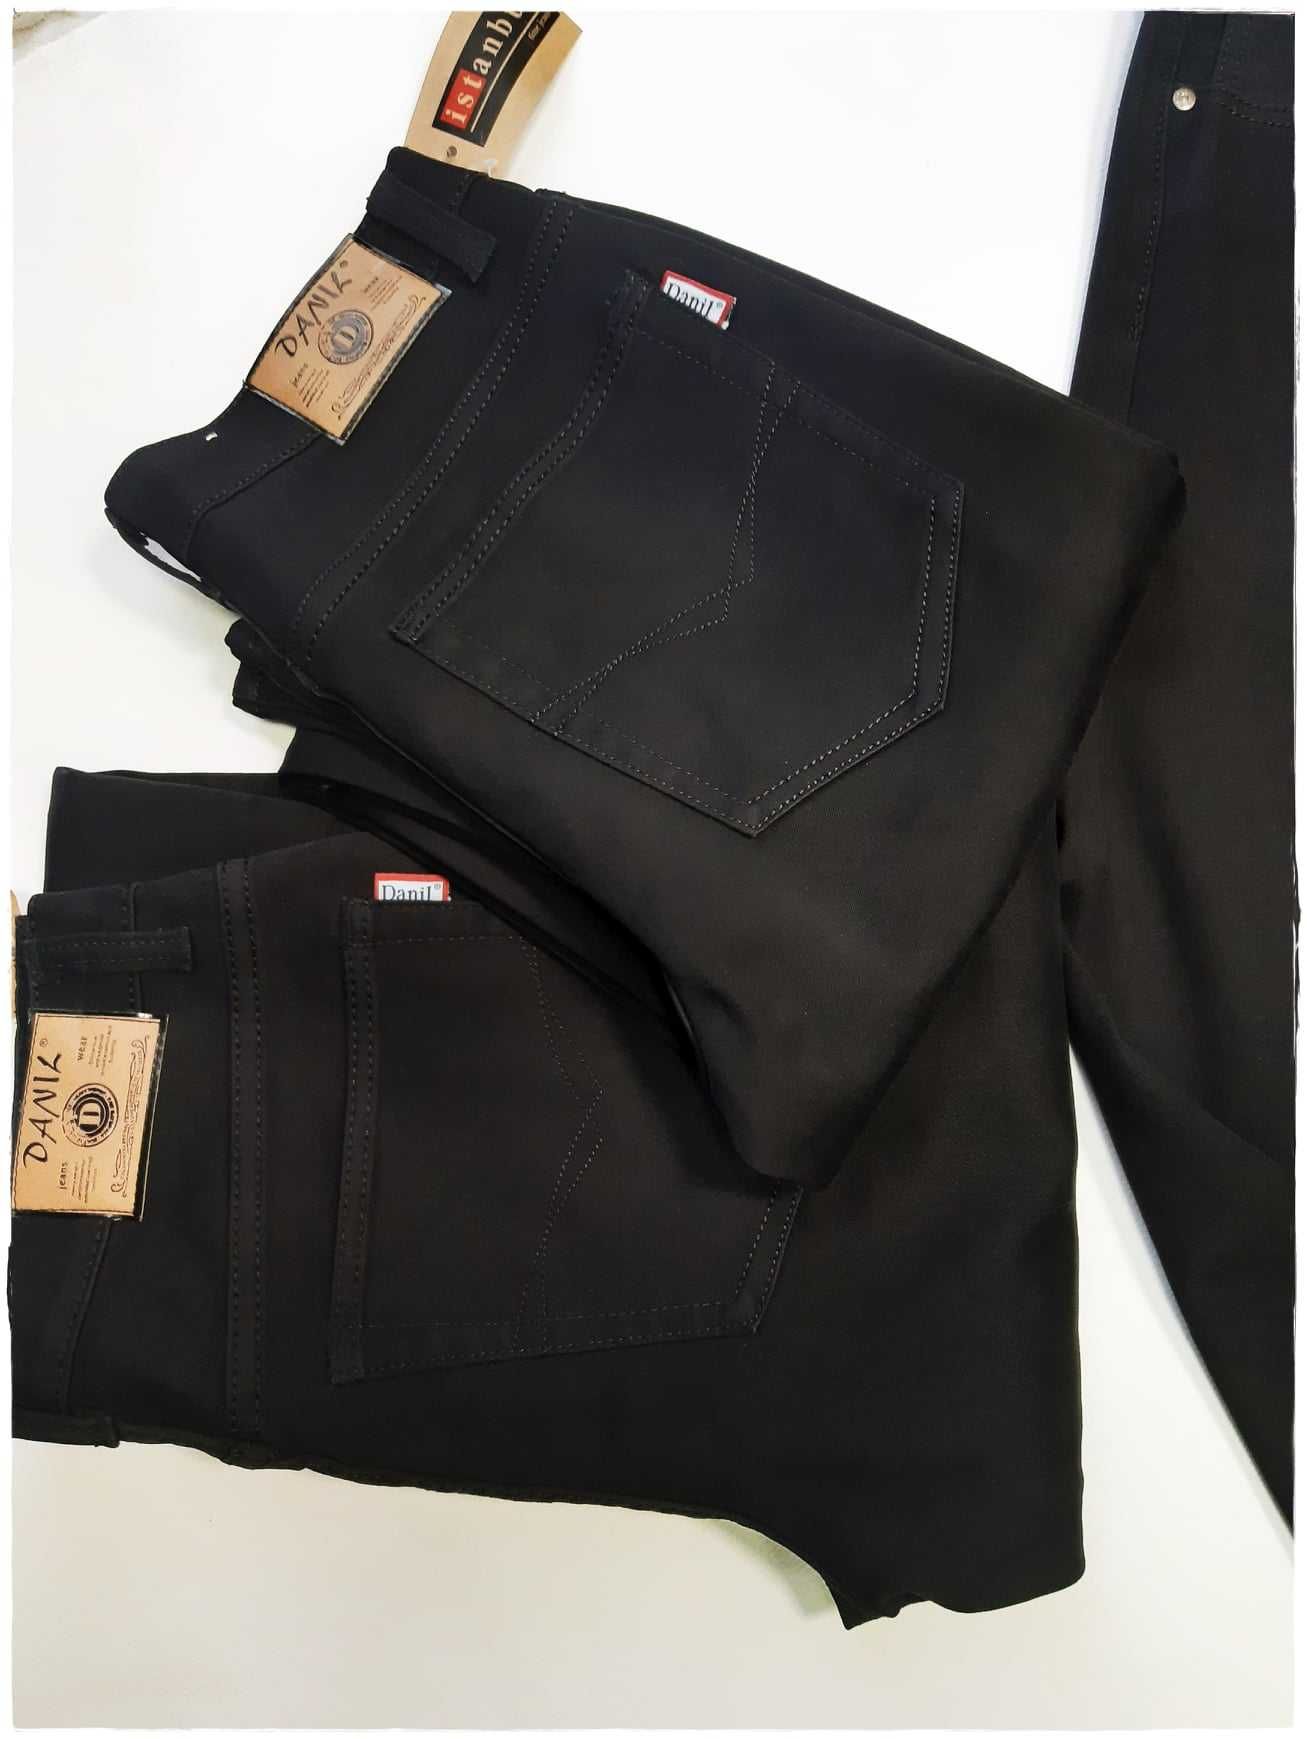 Męskie czarne grubsze spodnie klasyczne. Długie. Rozm 32,33 L36